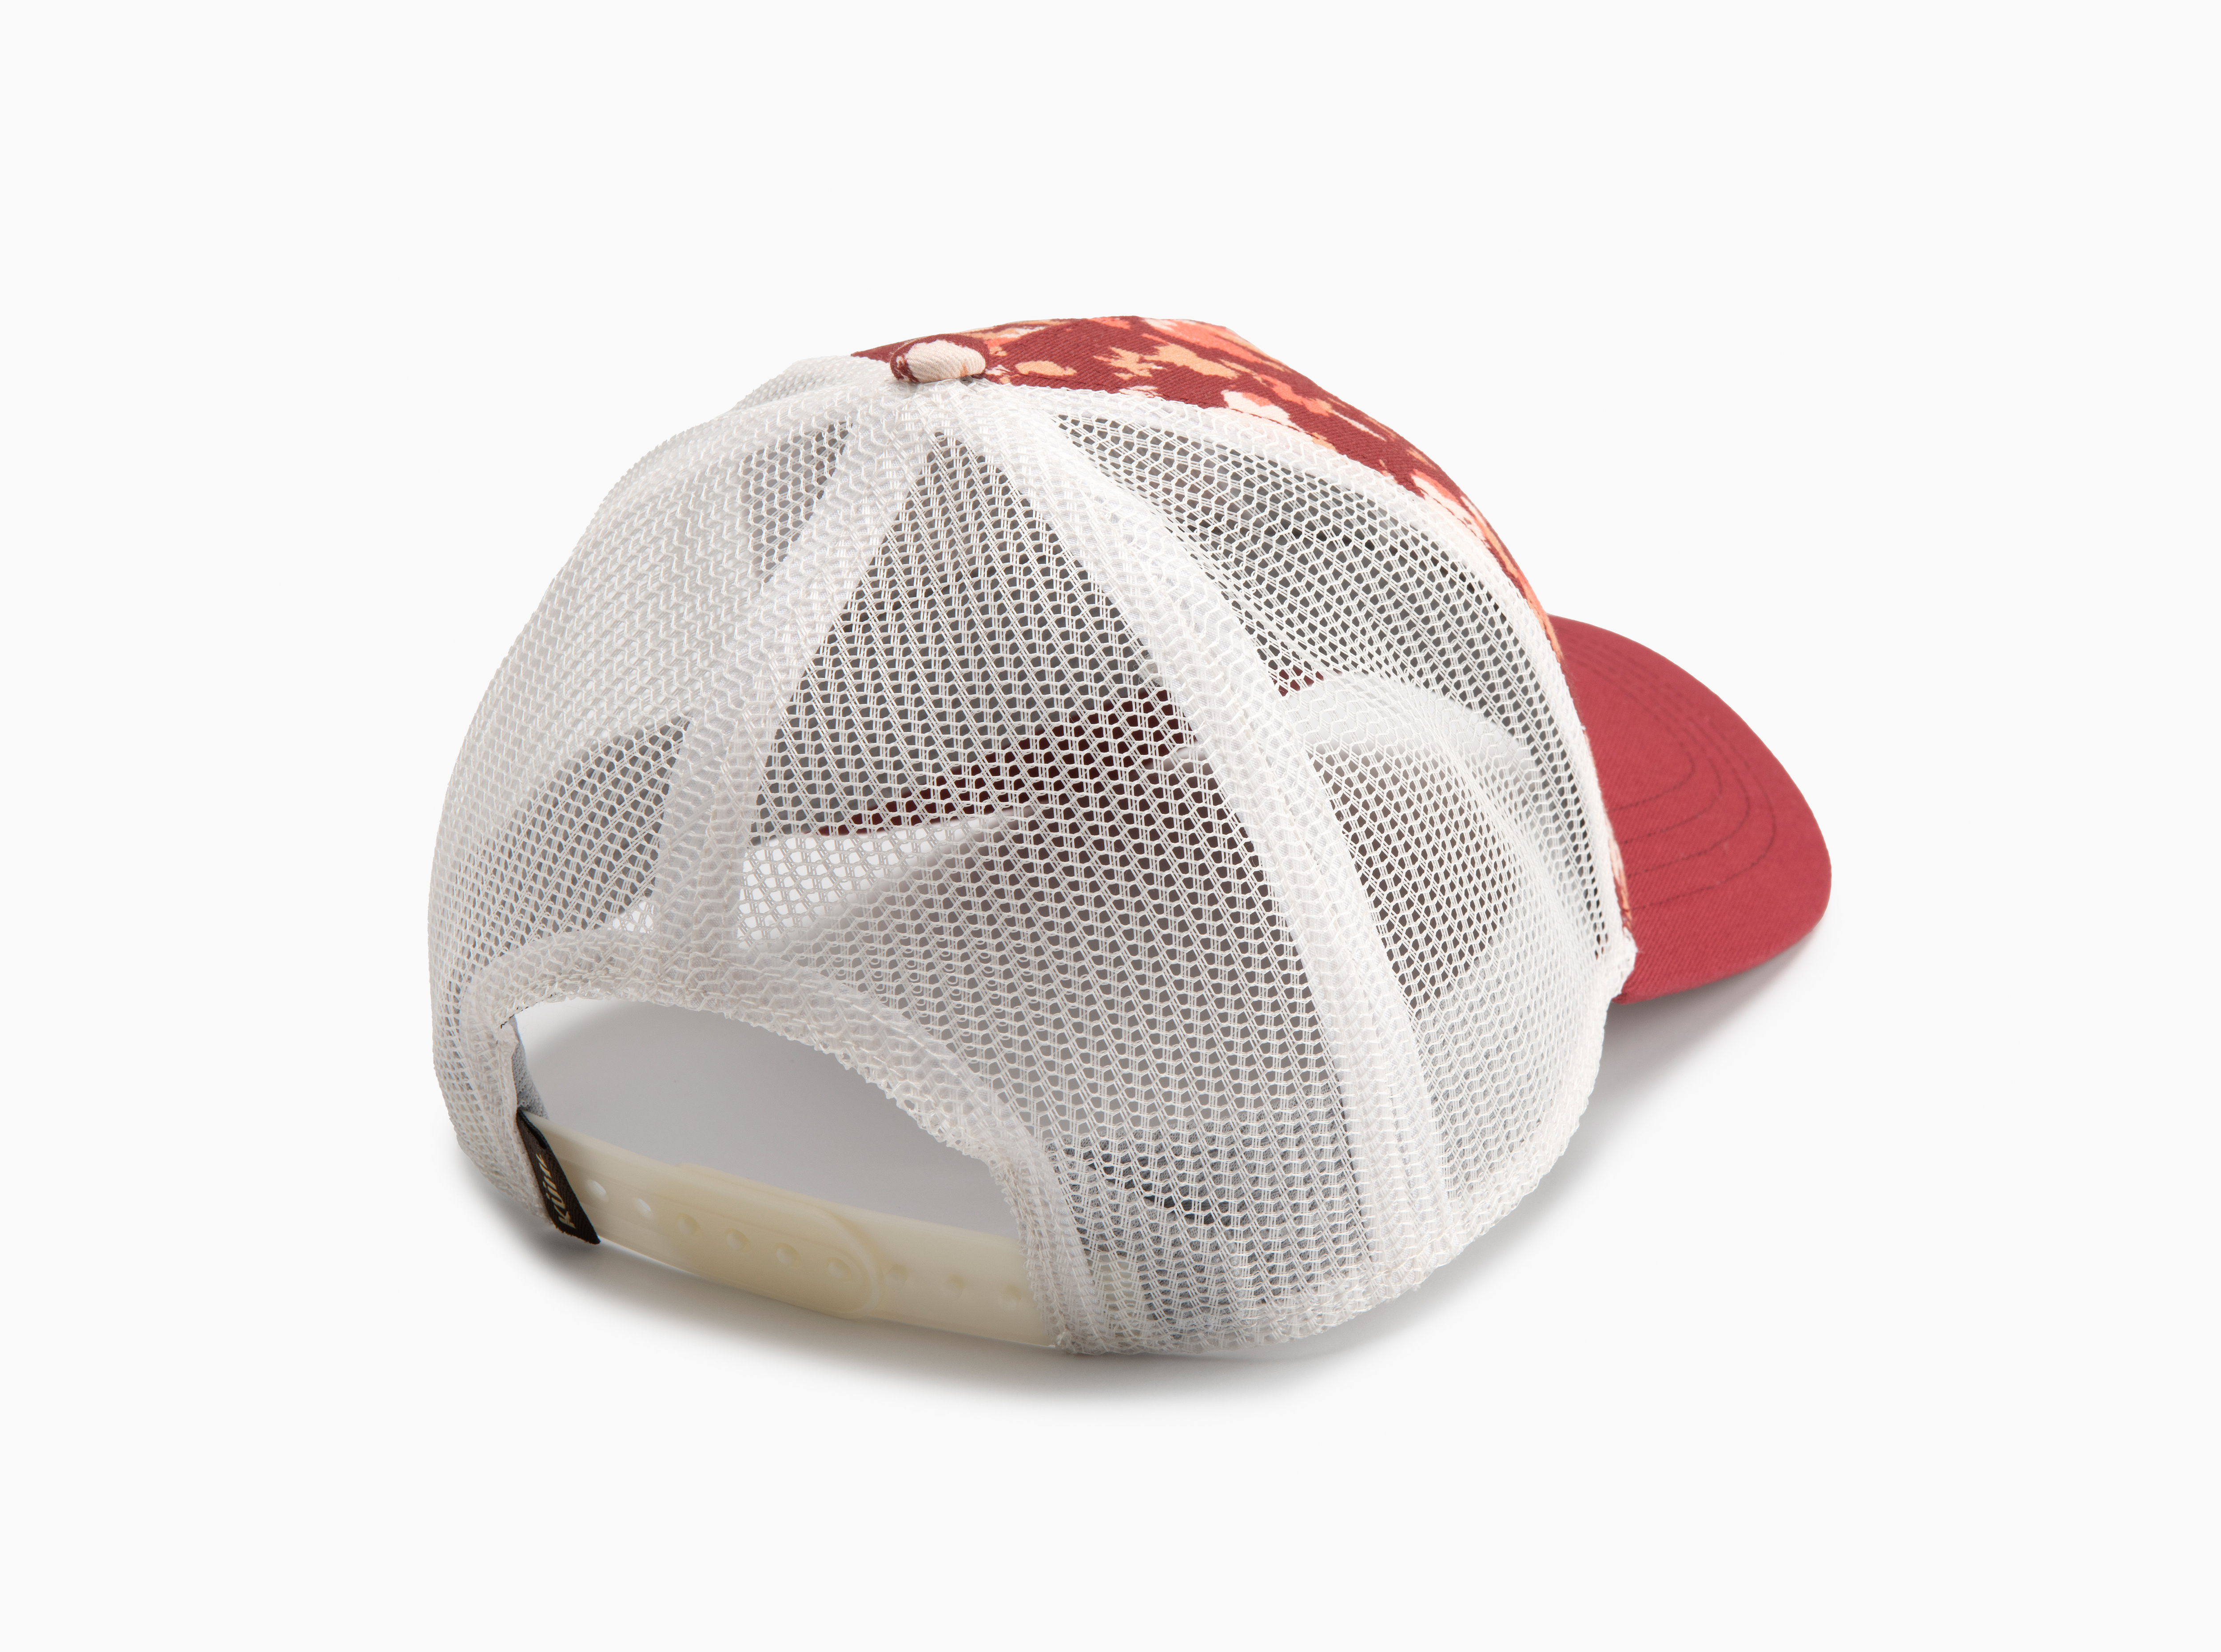 Low Profile KÜHL® Trucker Hat in Other's Bags Gear